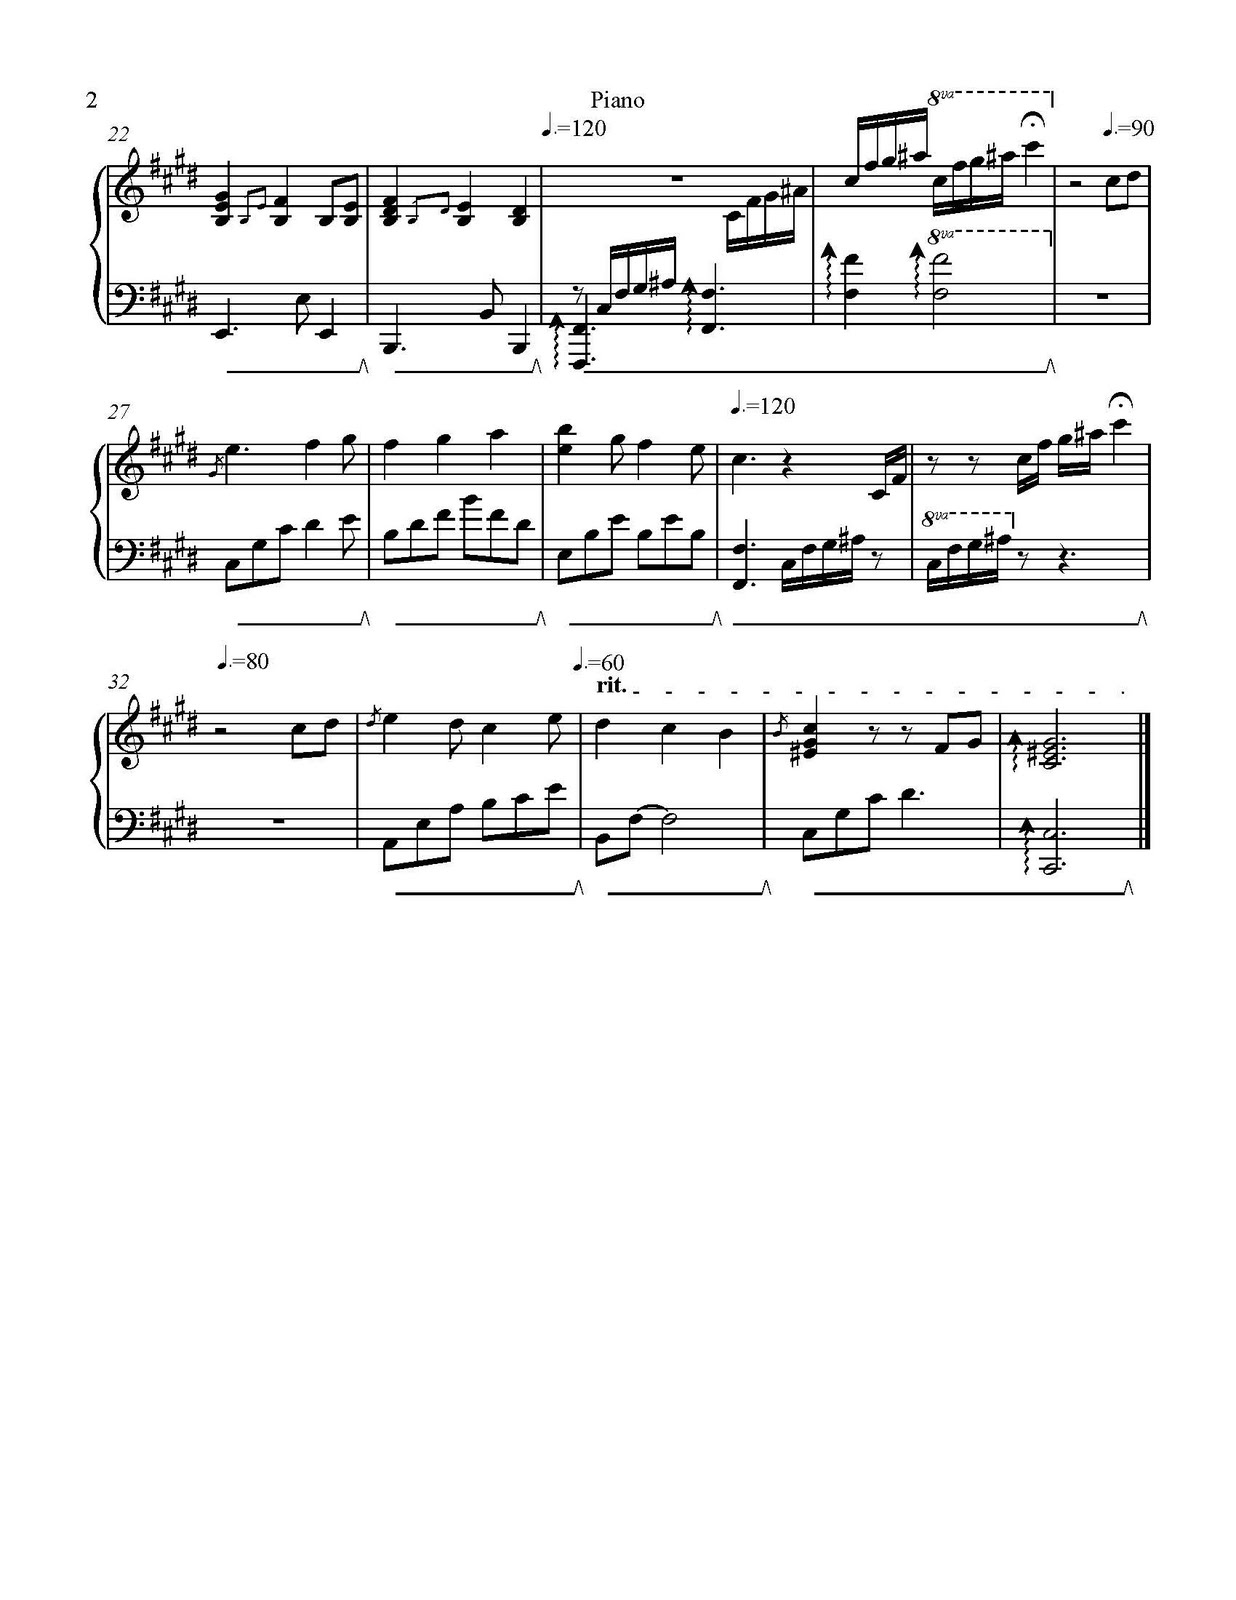 Beautiful Piano Song - Free Sheet Music: A Beautiful Piano Song - Free